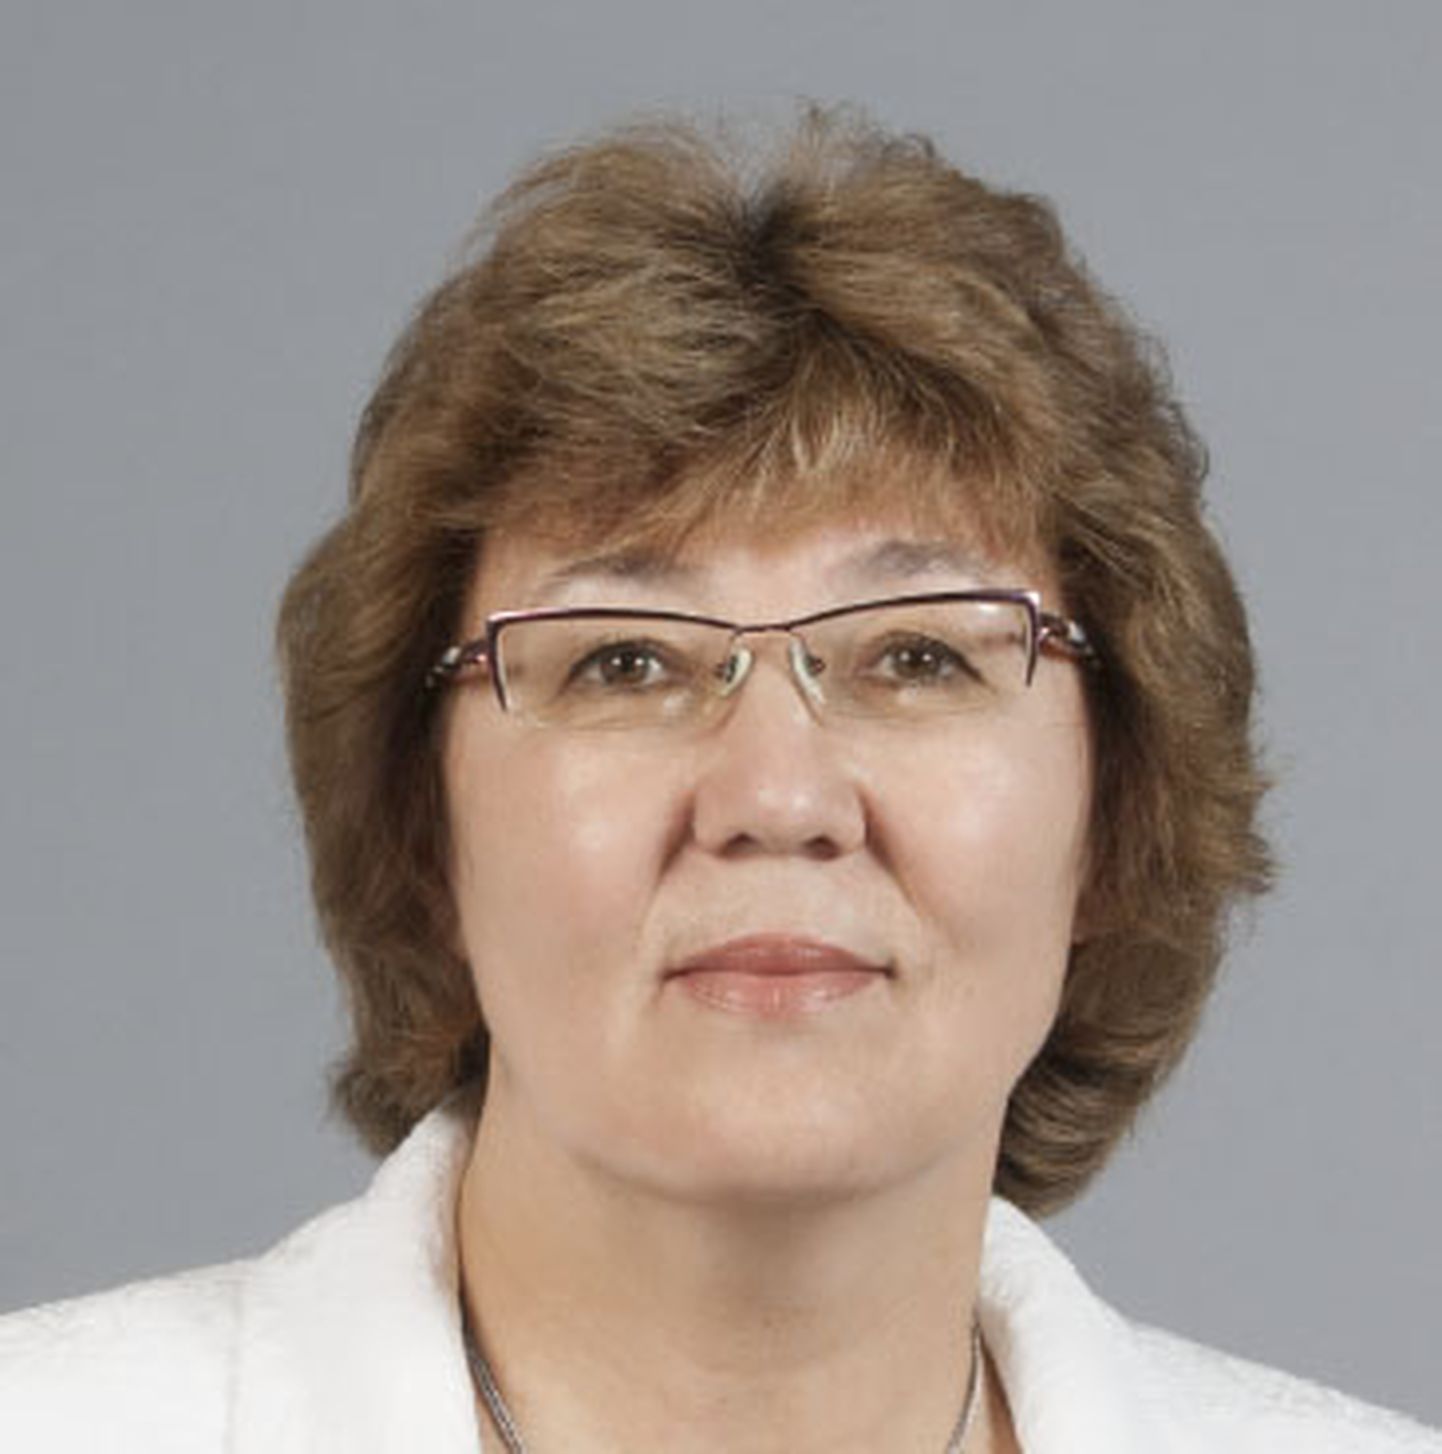 Gulnara Sidorenko, Sillamäe volikogu liige, sotsiaaldemokraatliku fraktsiooni esimees